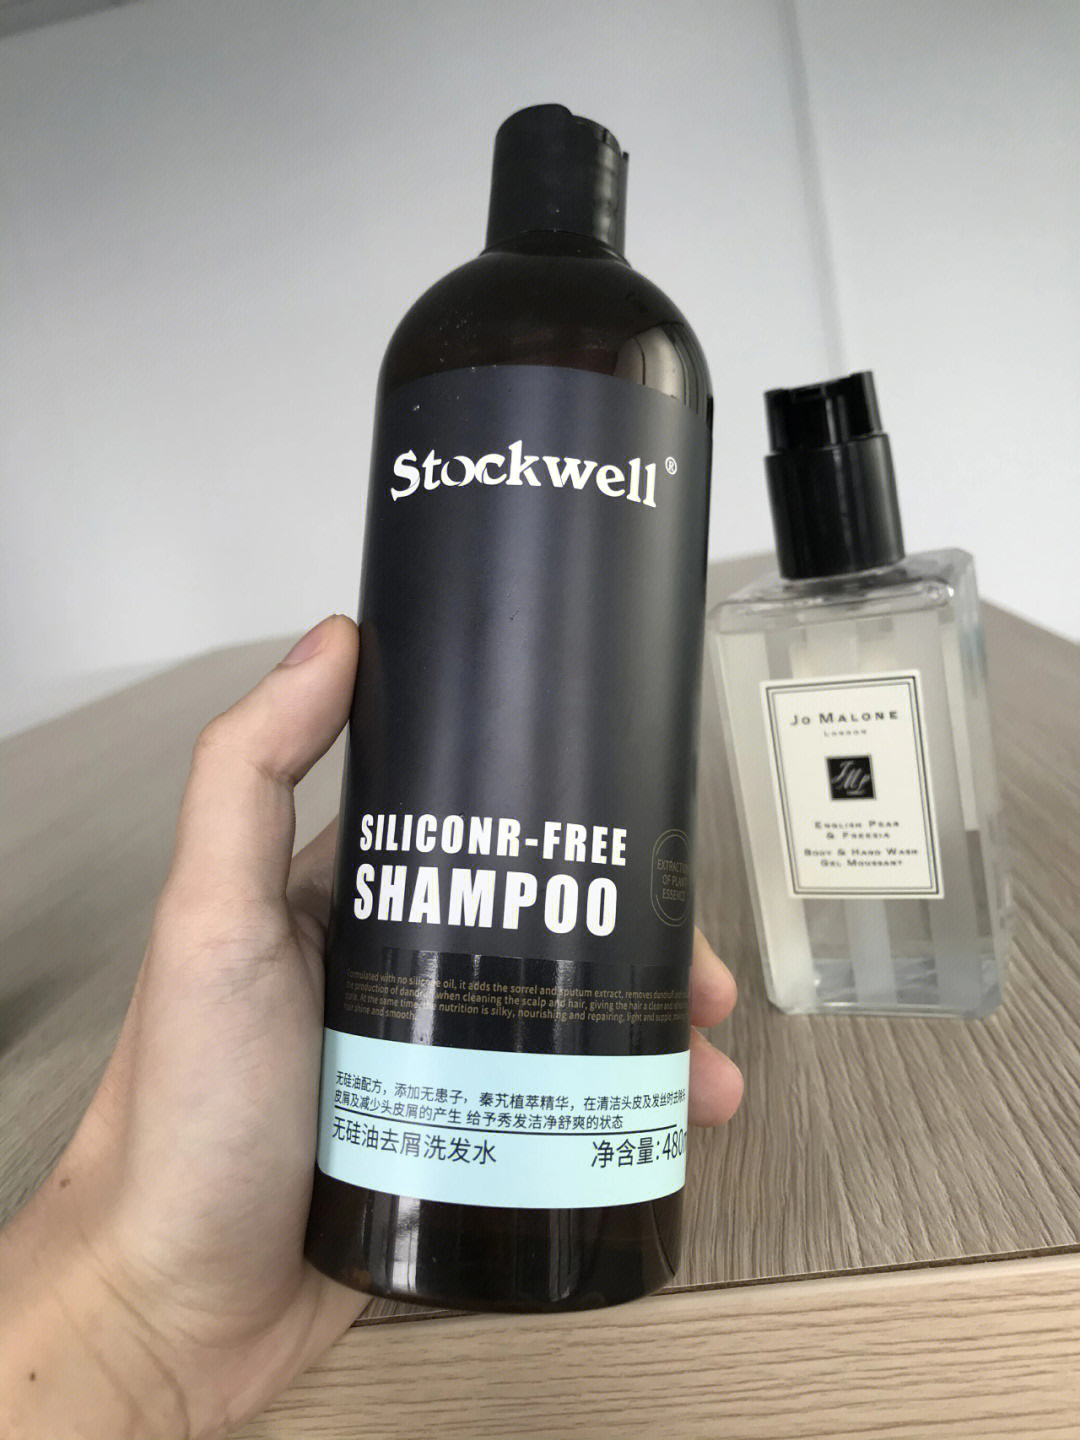 stockwell的去屑控油洗发水特别好吸收,用完头发的水光感就像刚做完